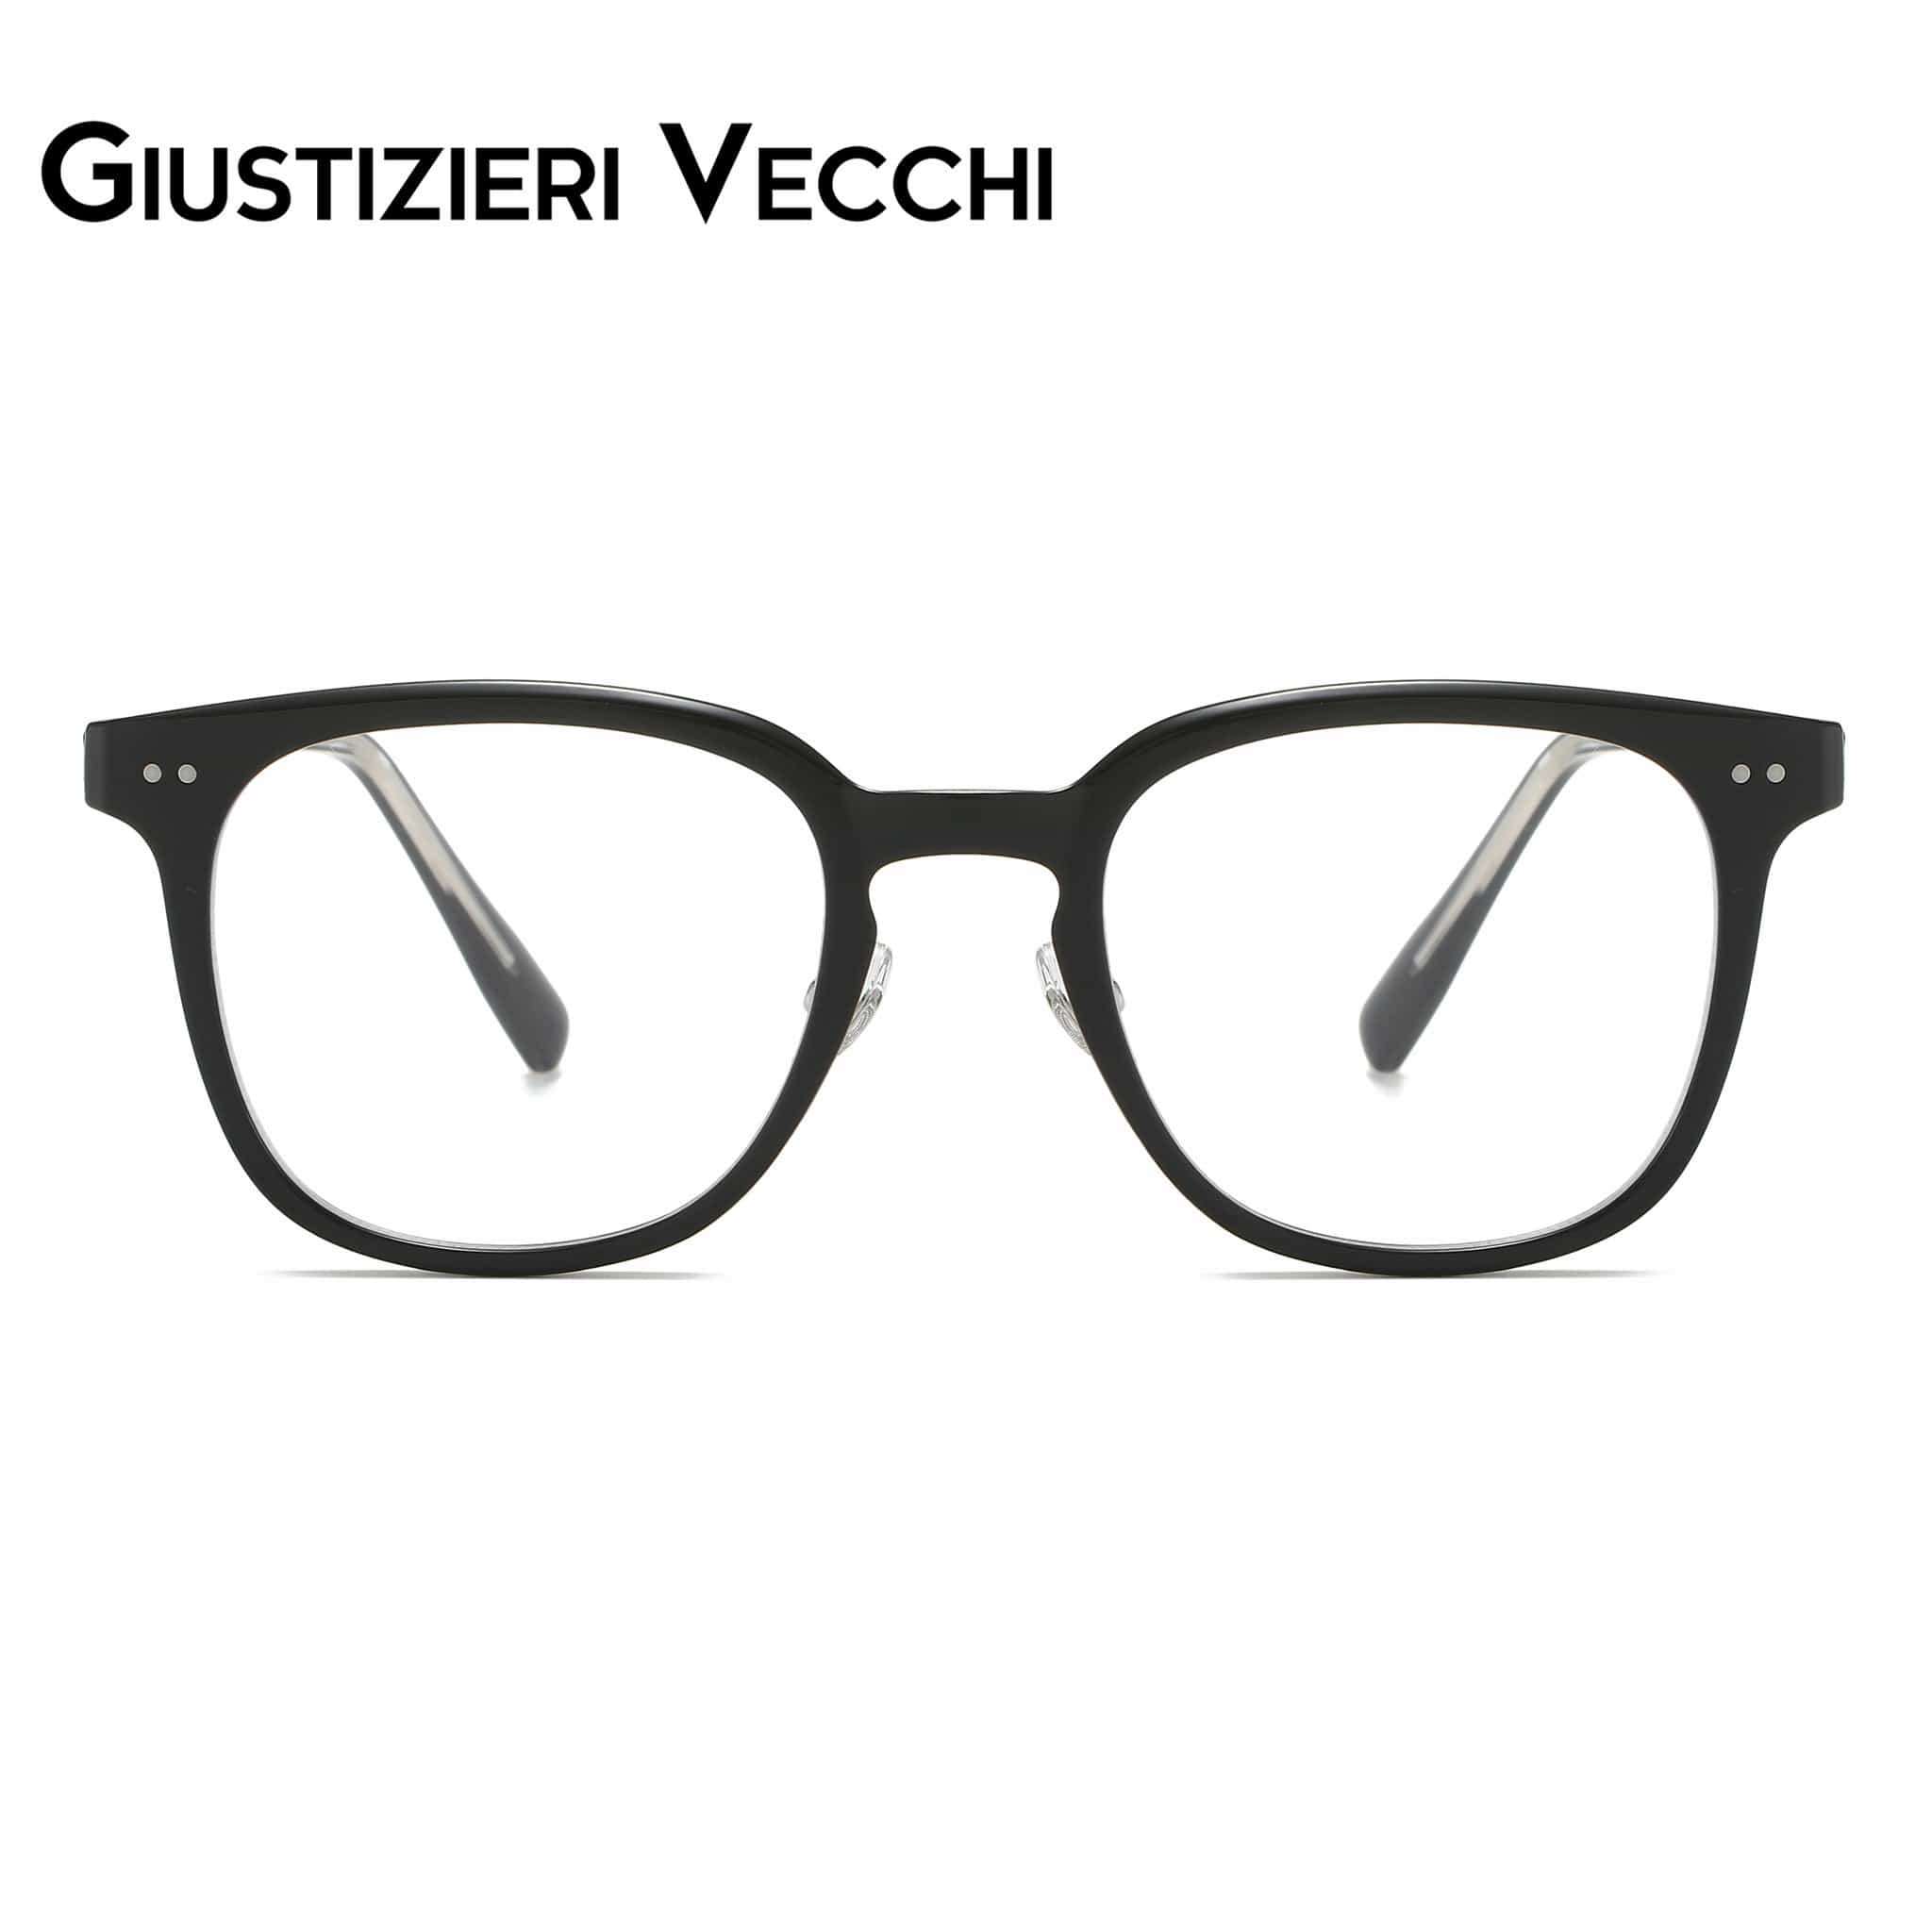 GIUSTIZIERI VECCHI Eyeglasses Medium / Black RomaVista Uno